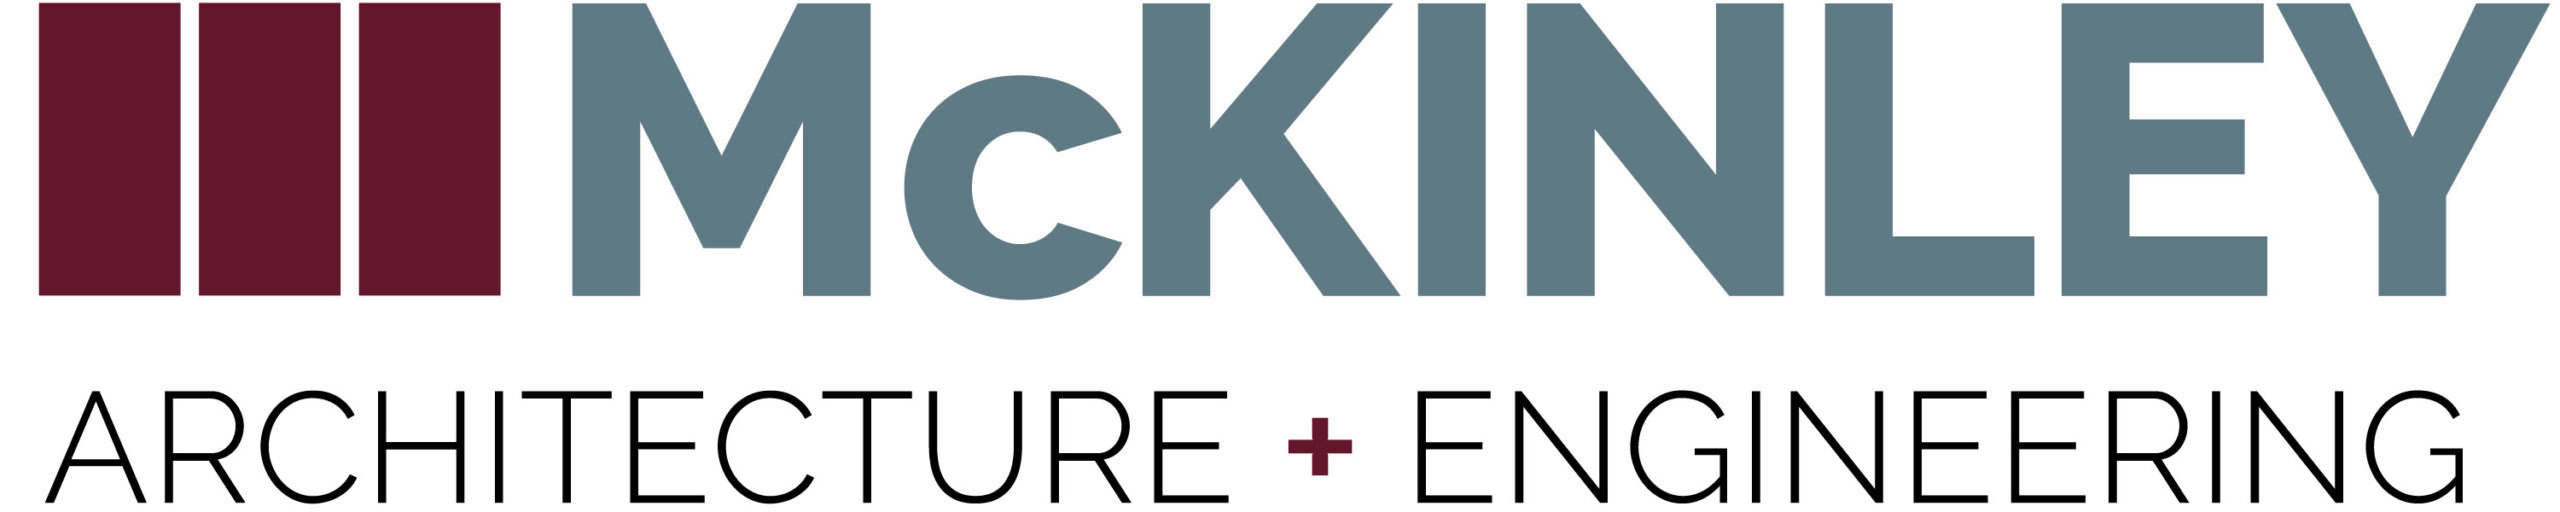 McKinley Architecture & Engineering logo